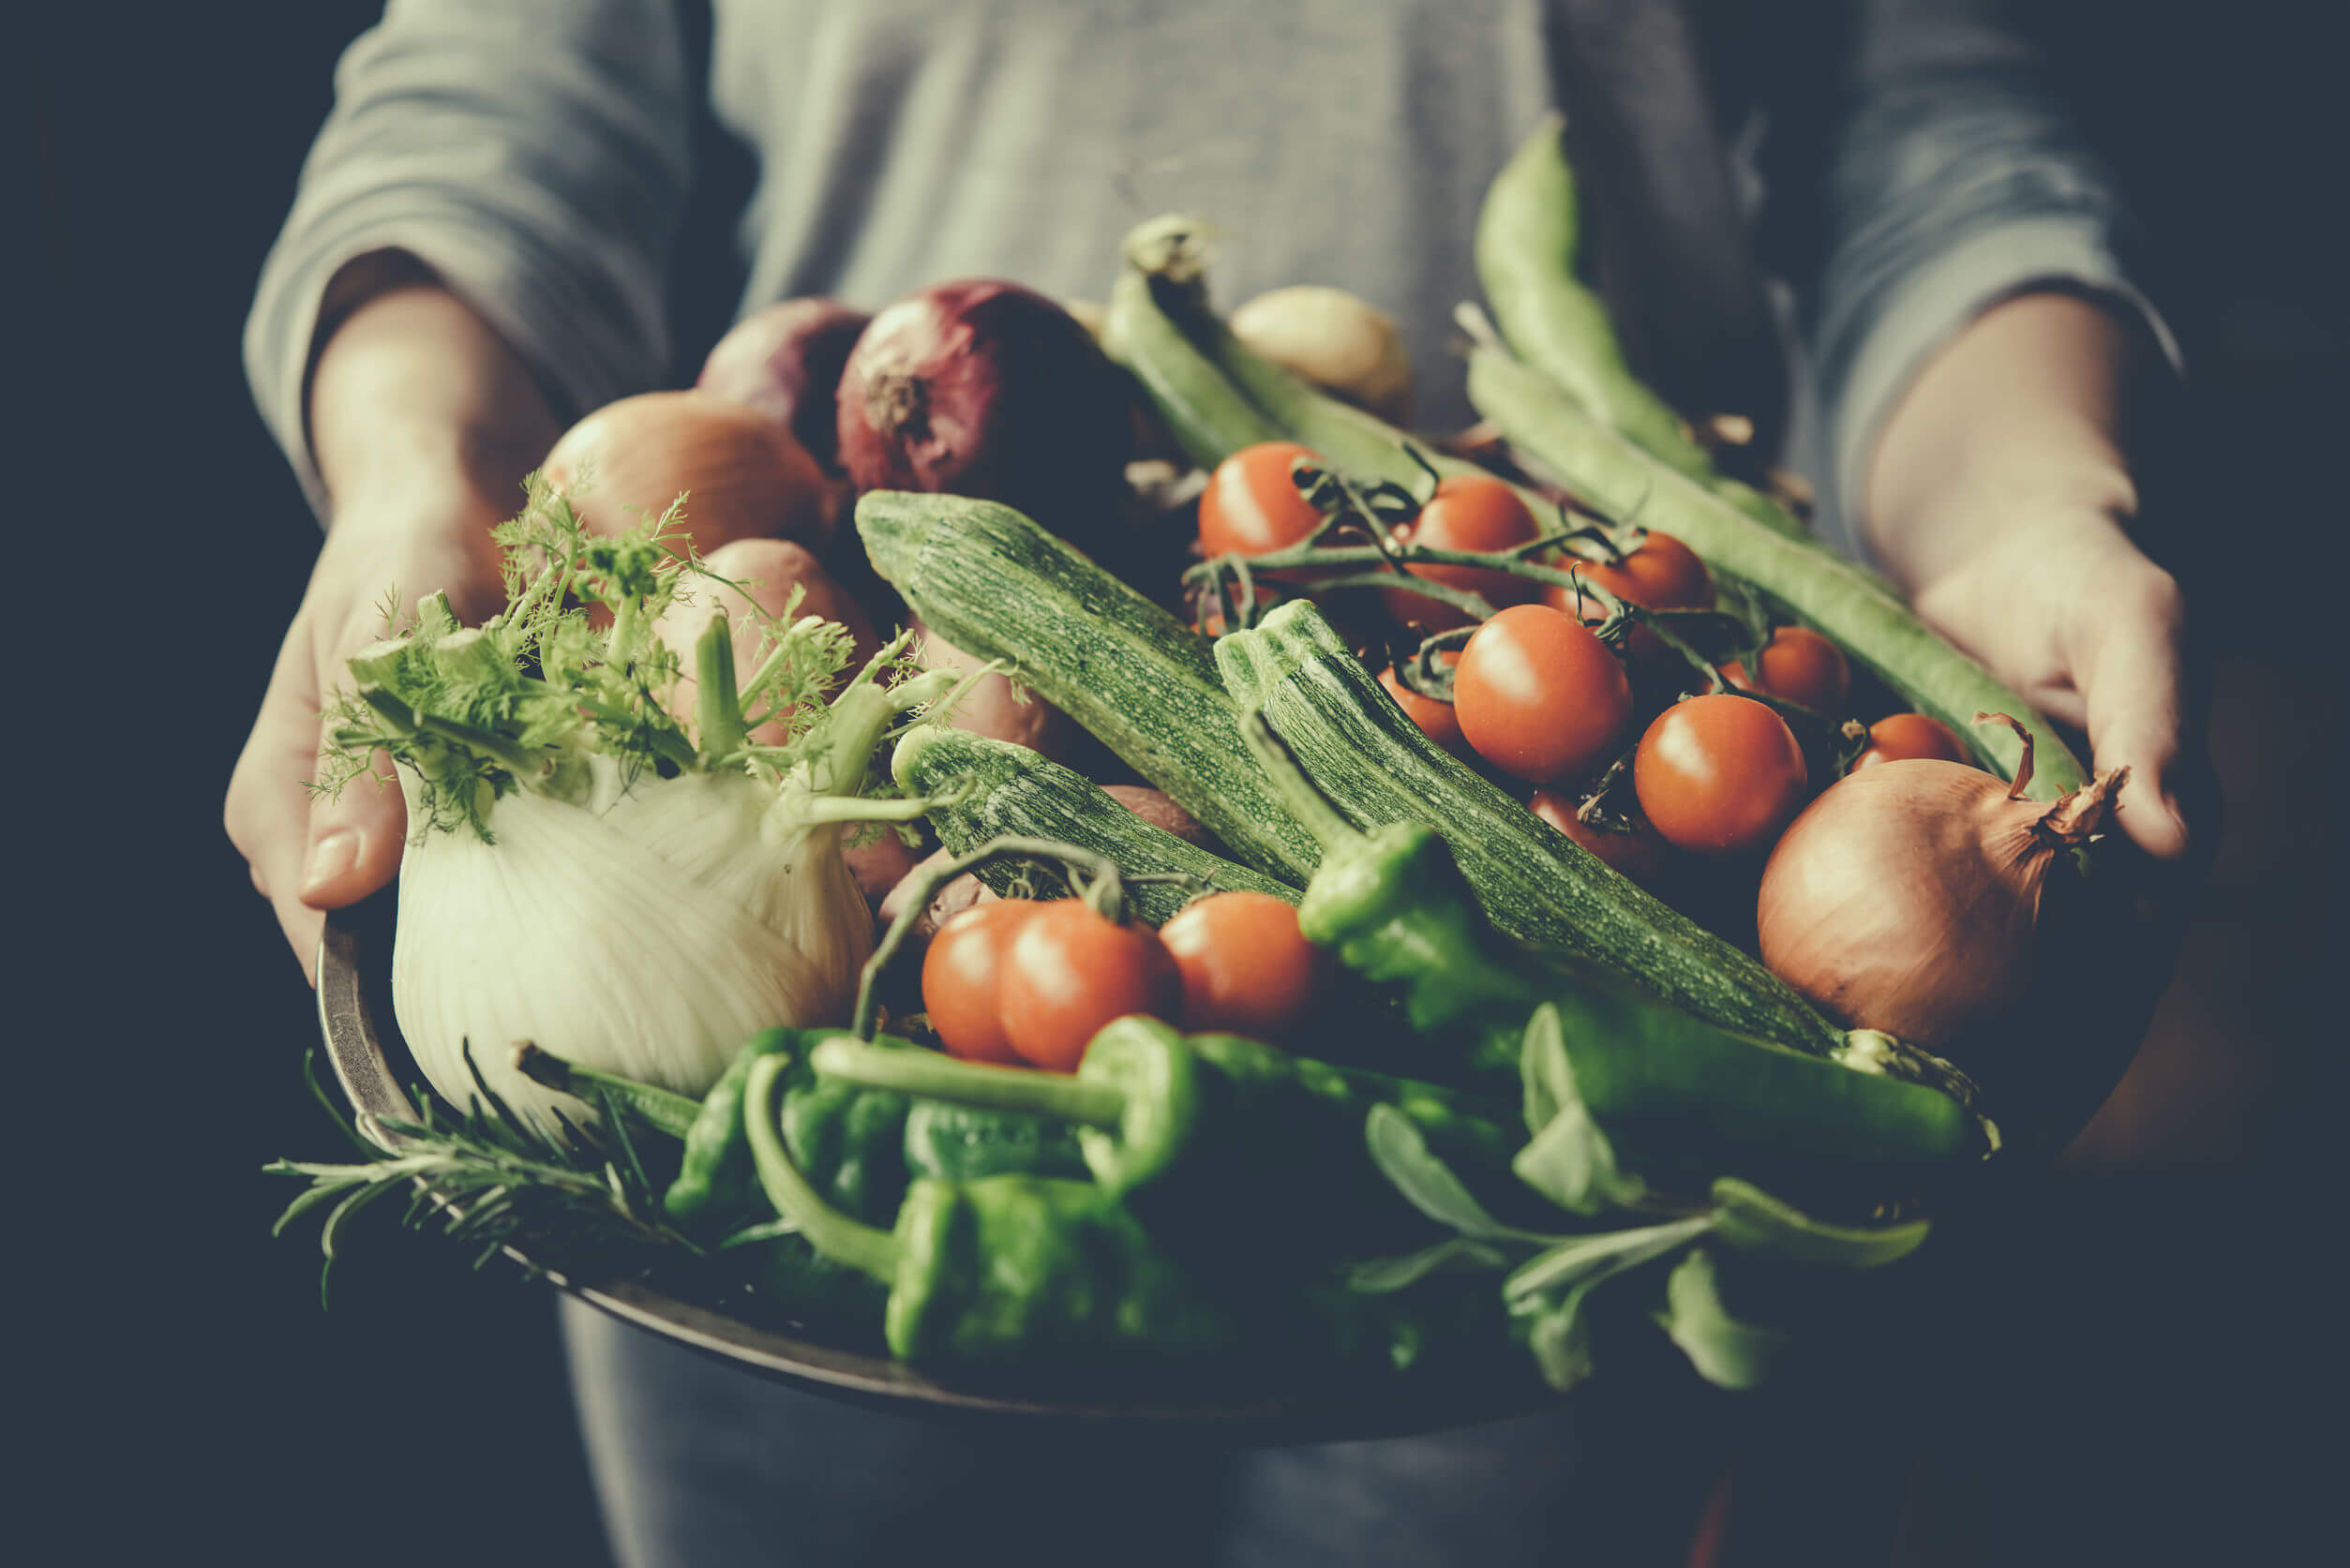 La alimentación saludable incluye vegetales en el día a día